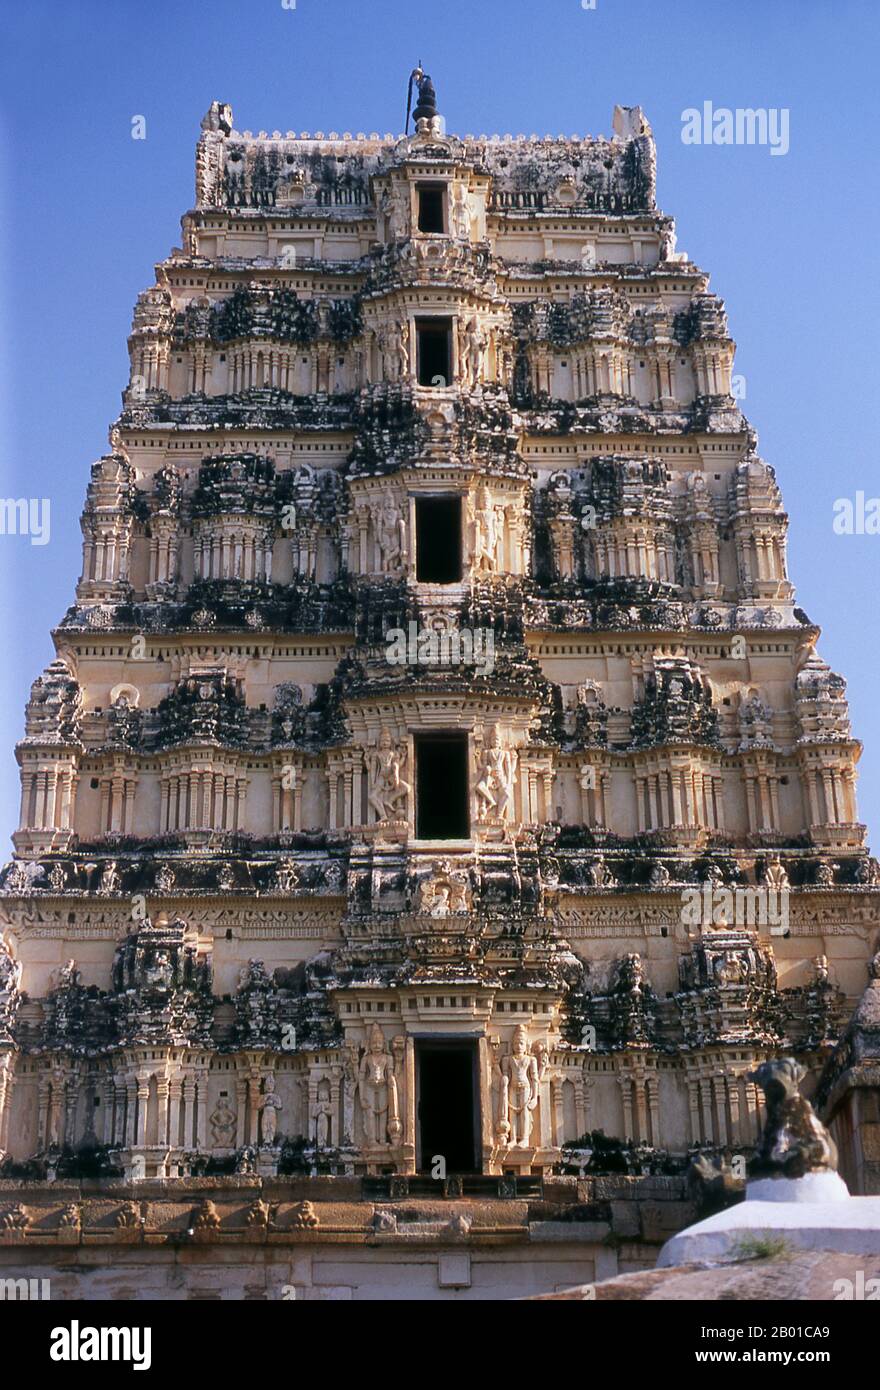 India: La torre settentrionale (gopuram), tempio di Virupaksha, Hampi, stato di Karnataka. Il Tempio di Virupaksha (conosciuto anche come Tempio di Pampapathi) è il principale centro di pellegrinaggio di Hampi. E' completamente intatto tra le rovine circostanti ed è ancora utilizzato nel culto. Il tempio è dedicato al Signore Shiva, qui conosciuto come Virupaksha, come la consorte della dea locale Pampa, associata al fiume Tungabhadra. Hampi è un villaggio nel nord dello stato di Karnataka. Si trova all'interno delle rovine di Vijayanagara, l'ex capitale dell'Impero Vijayanagara. Foto Stock